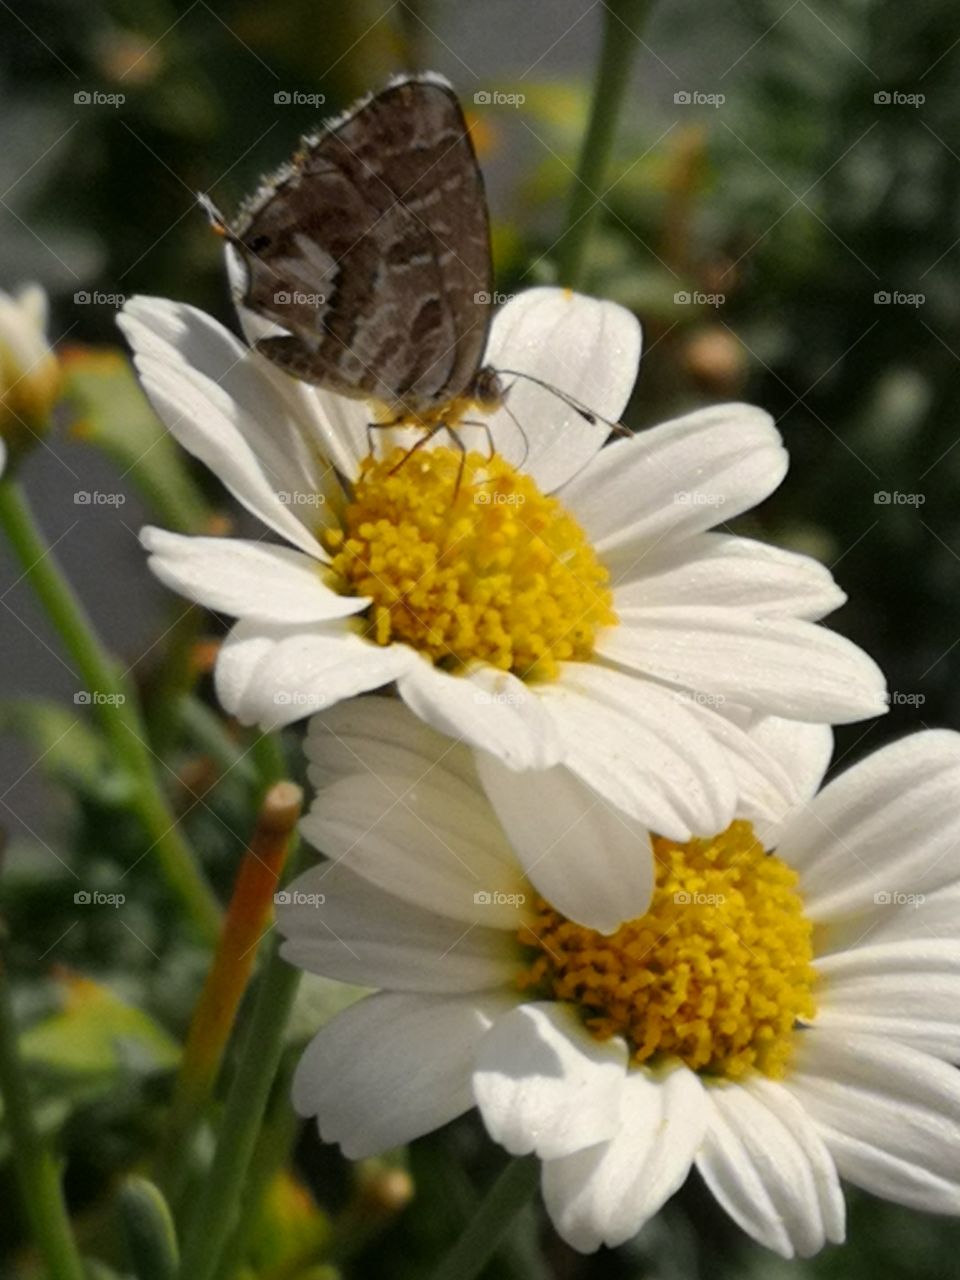 A butterfly on a daisy